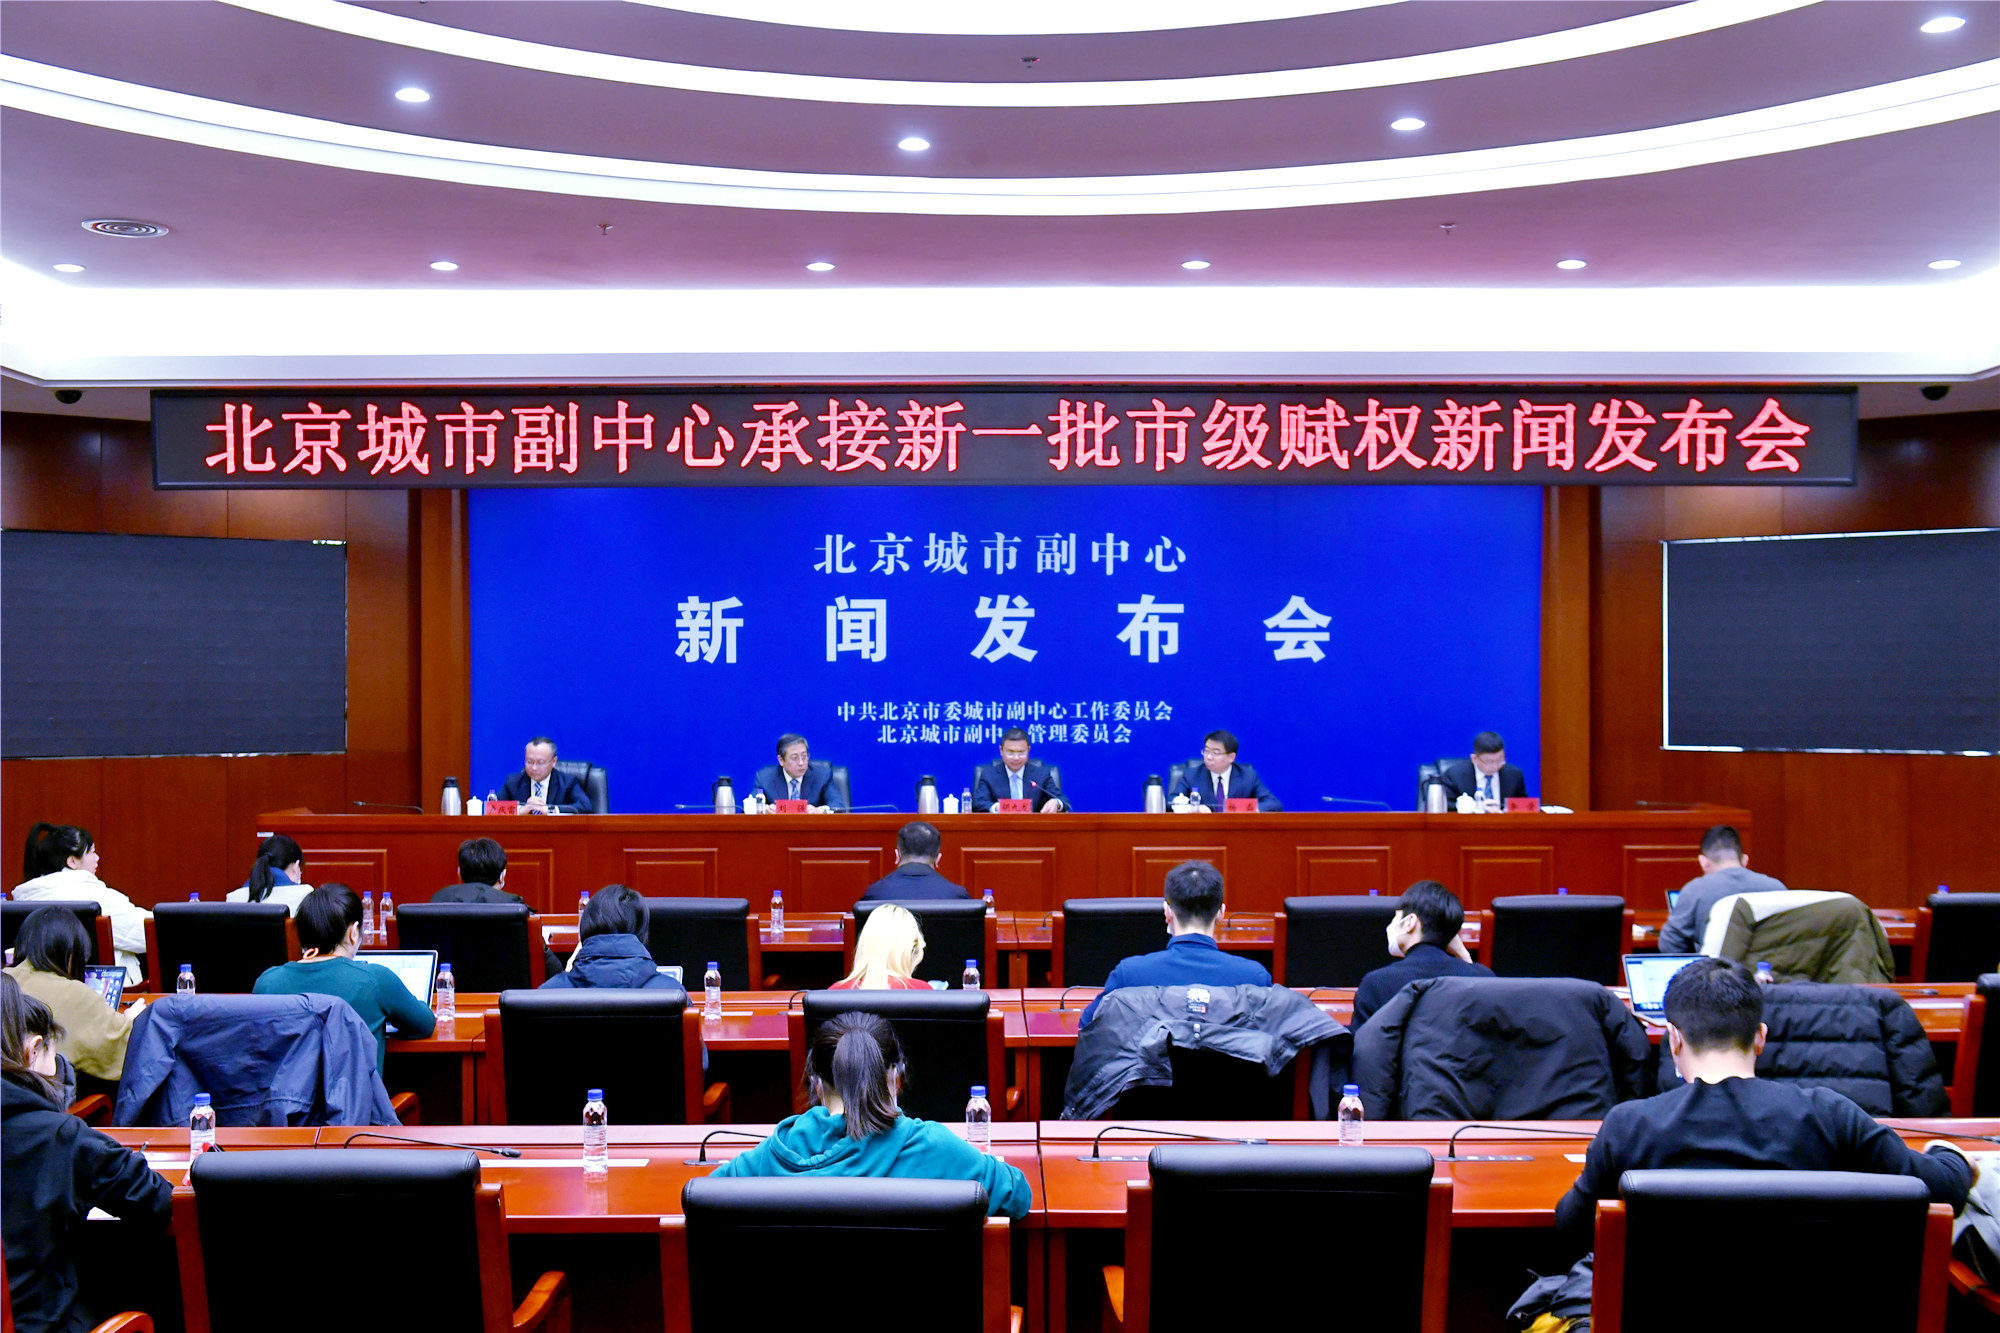 視賦權如賦能  北京城市副中心承接第三批184項市級賦權